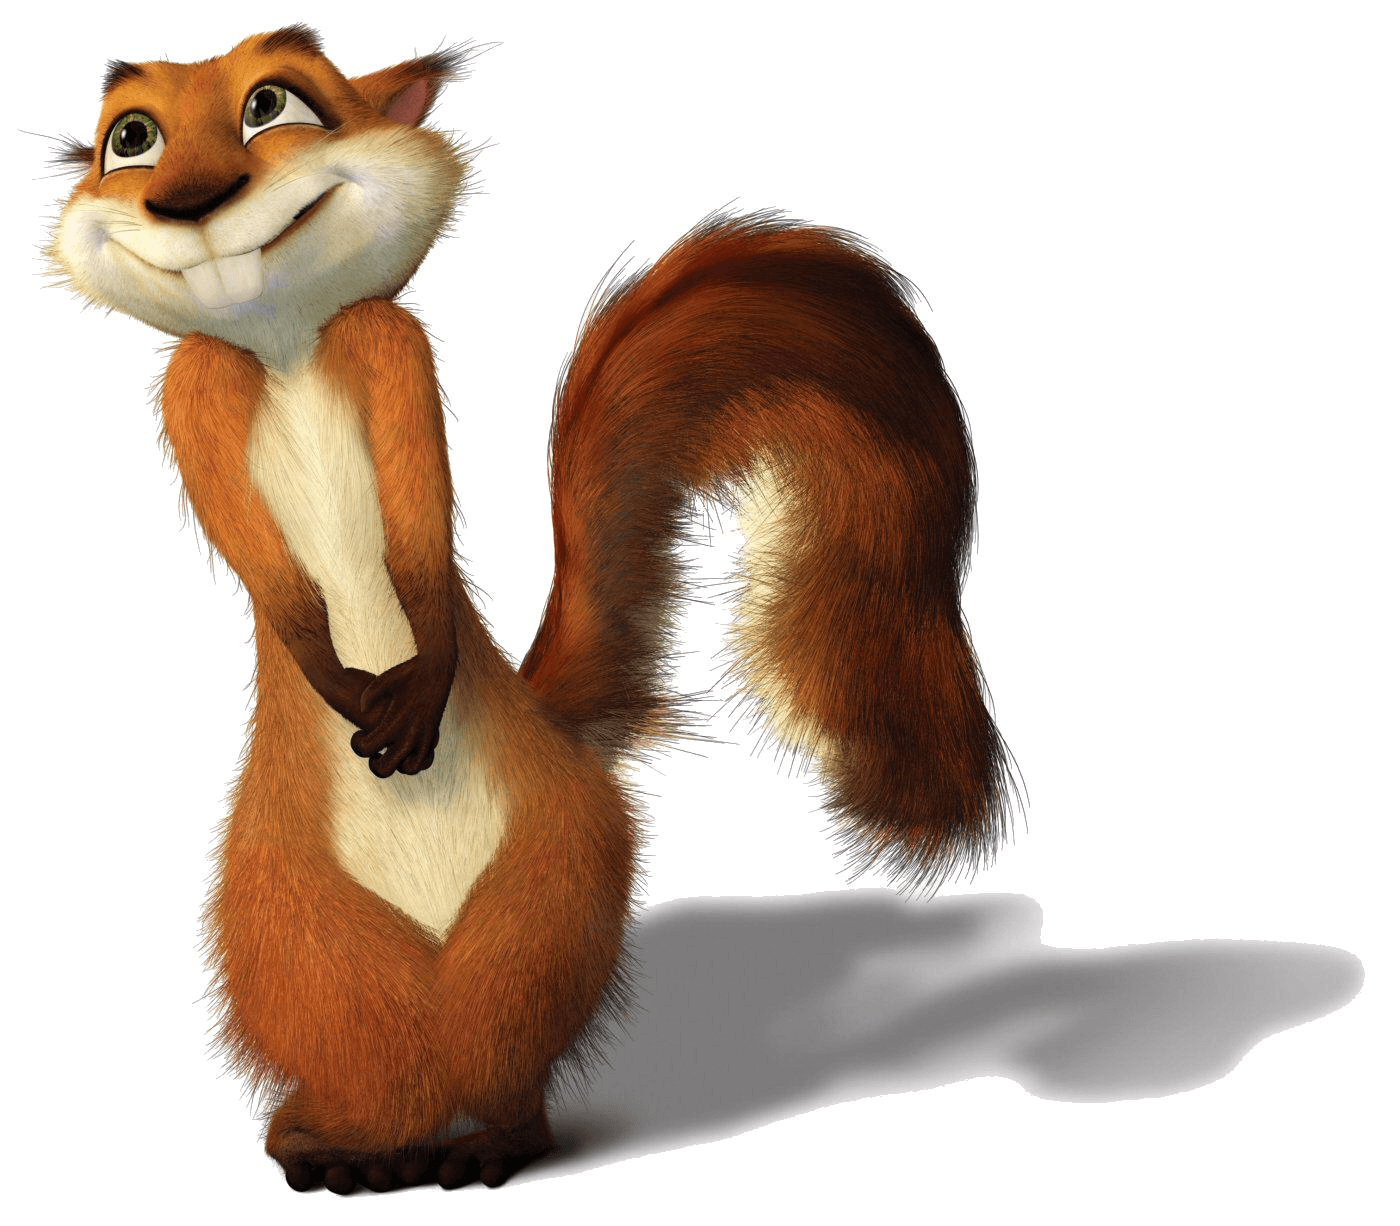 Red Squirrel Animated Logo - Hammy | Dreamworks Animation Wiki | FANDOM powered by Wikia